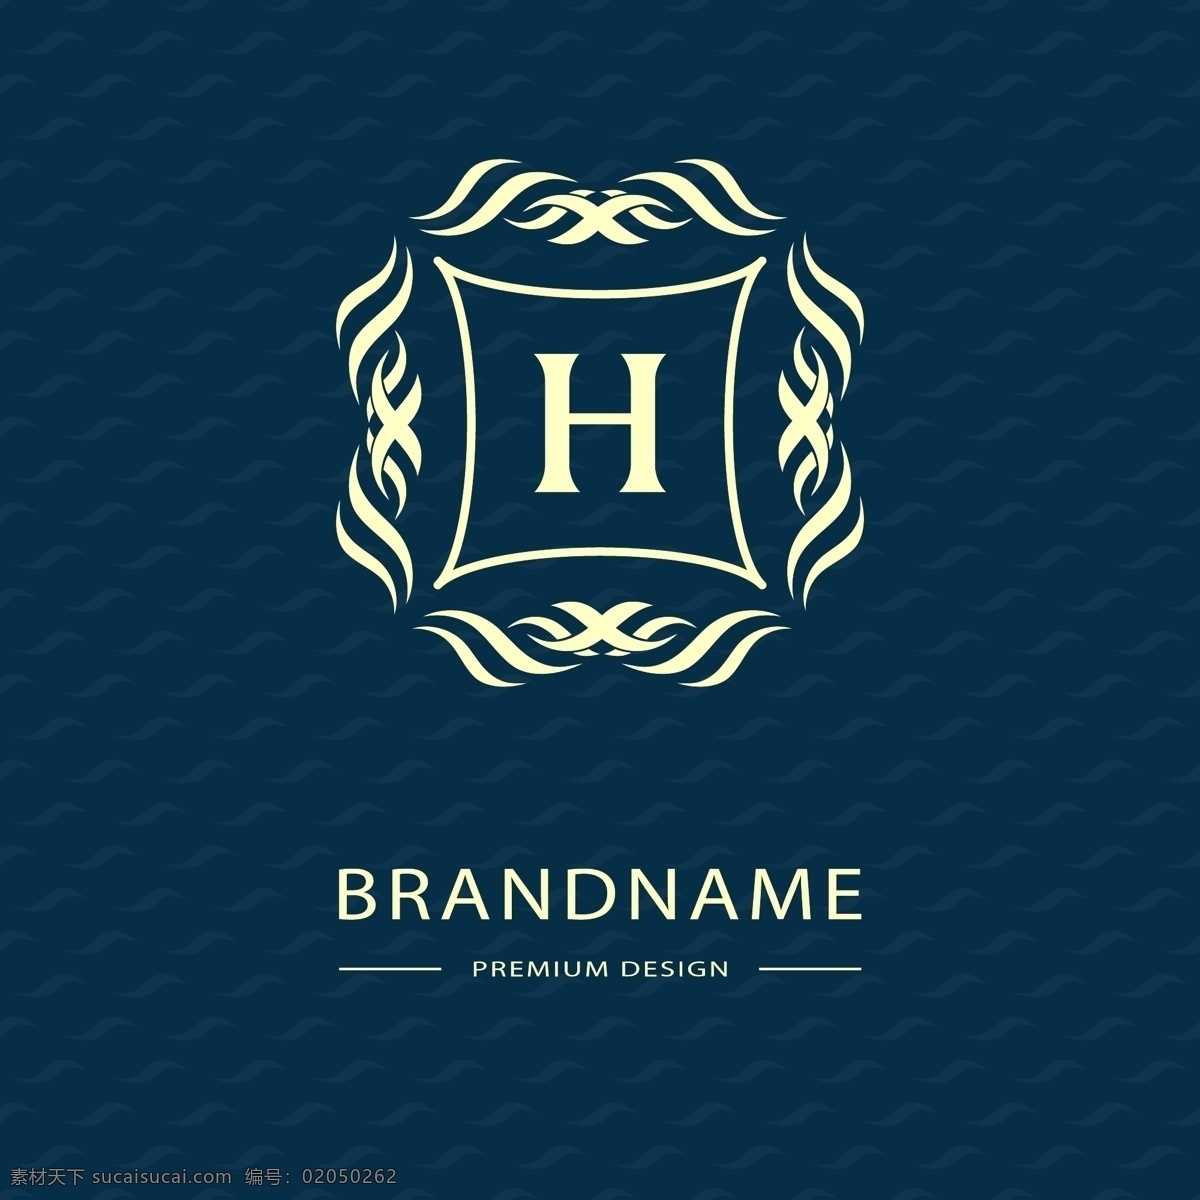 时尚 英文 标志设计 矢量 欧式 花纹 装饰 边框 logo 服装企业 标志 标识 图标 蓝色